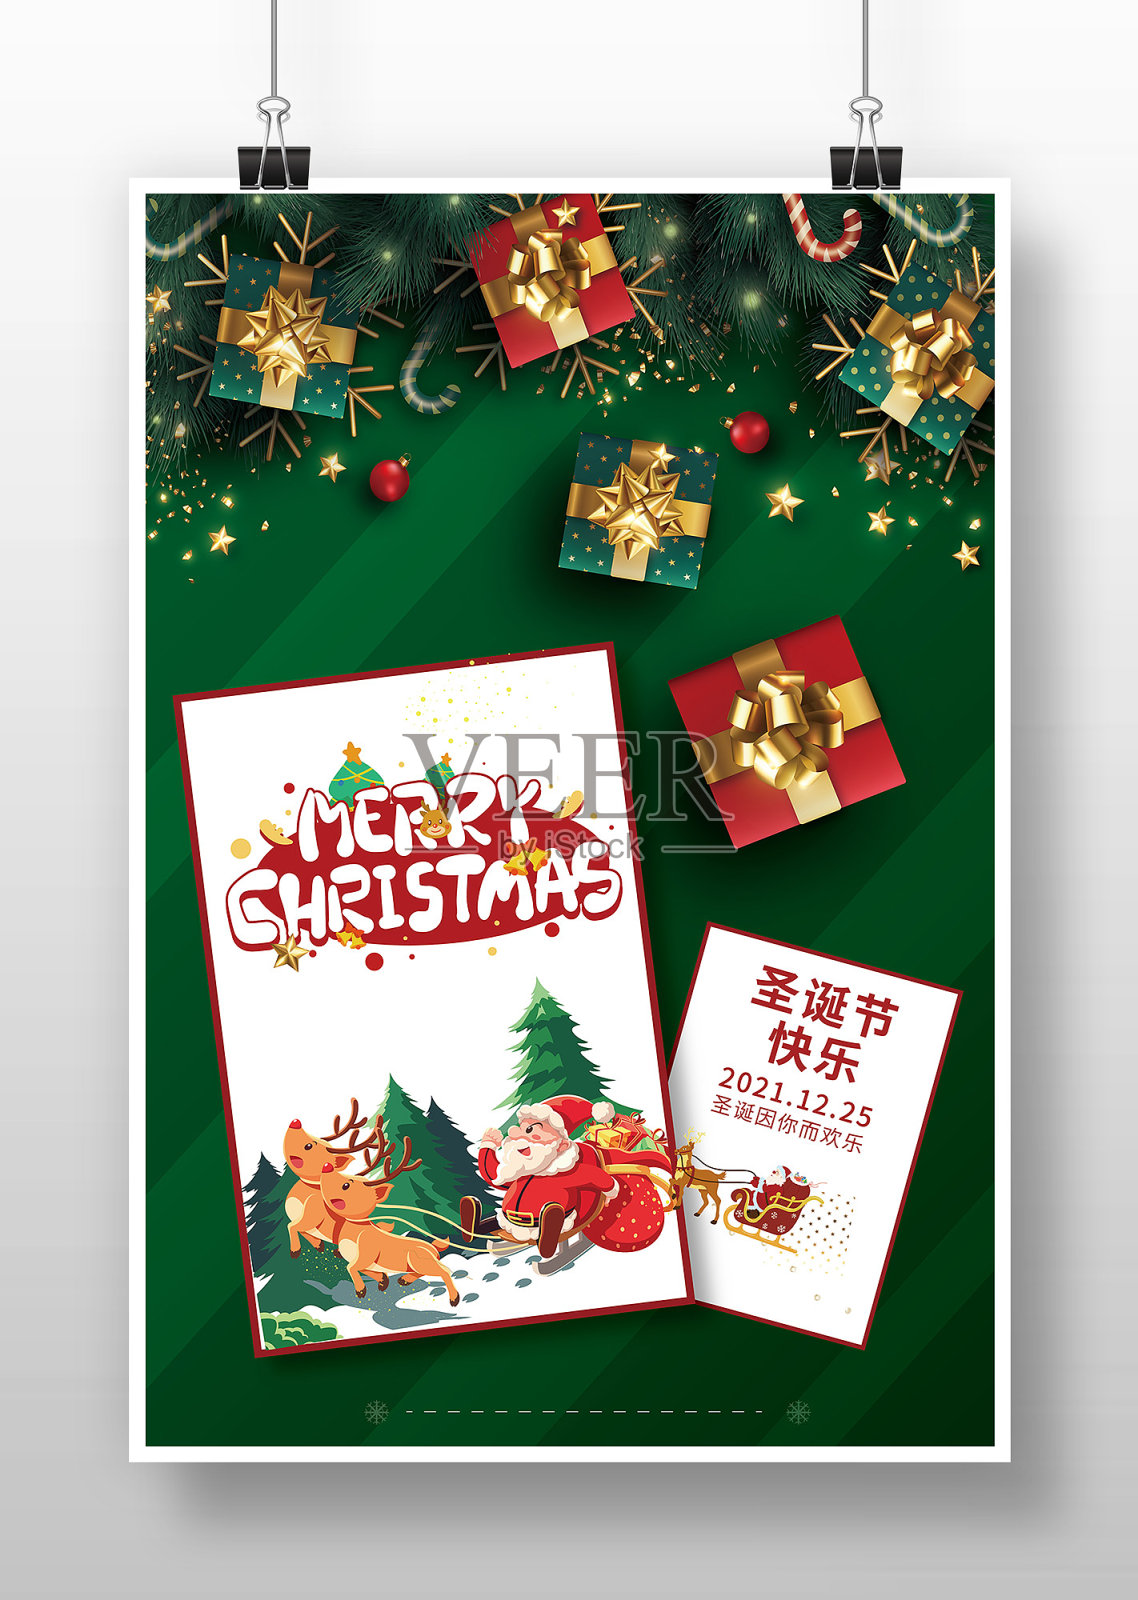 简约大气创意圣诞节礼物海报设计模板素材